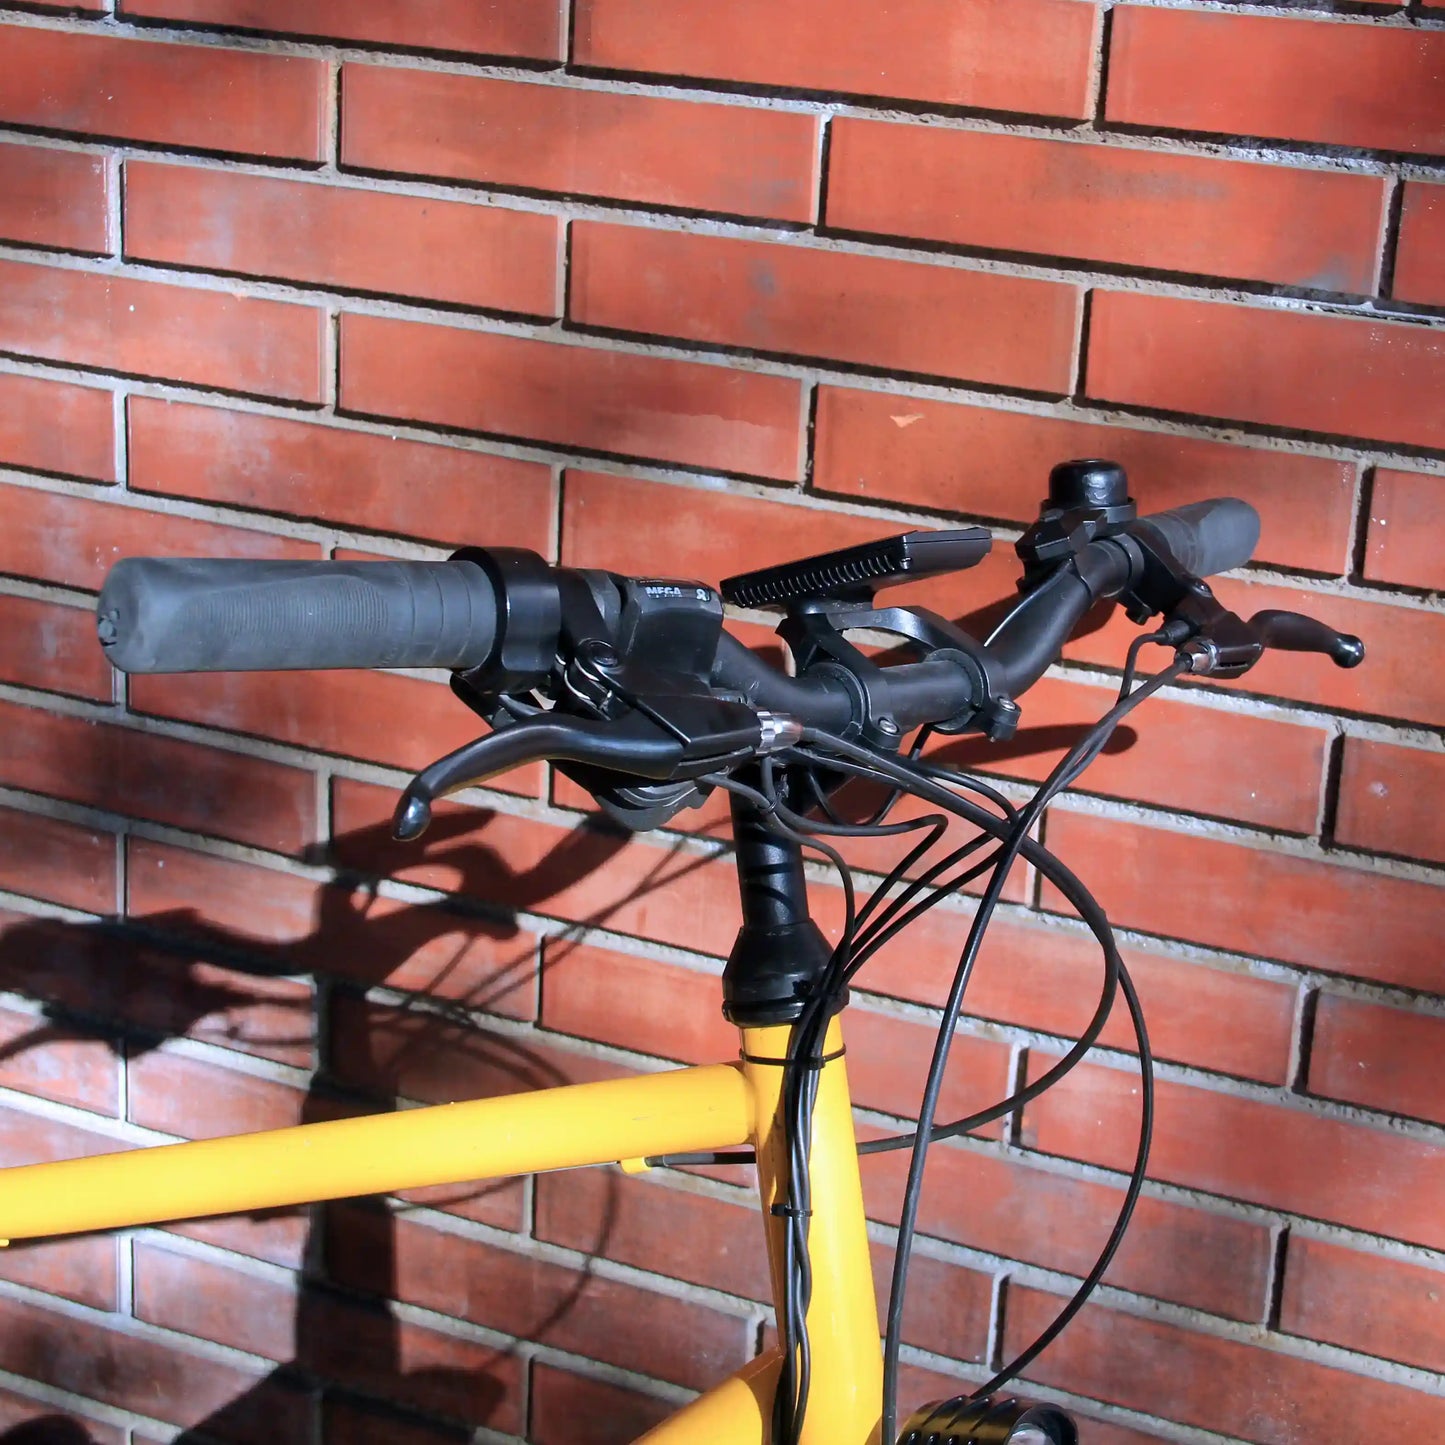 Bicicleta eléctrica modelo Spring slim